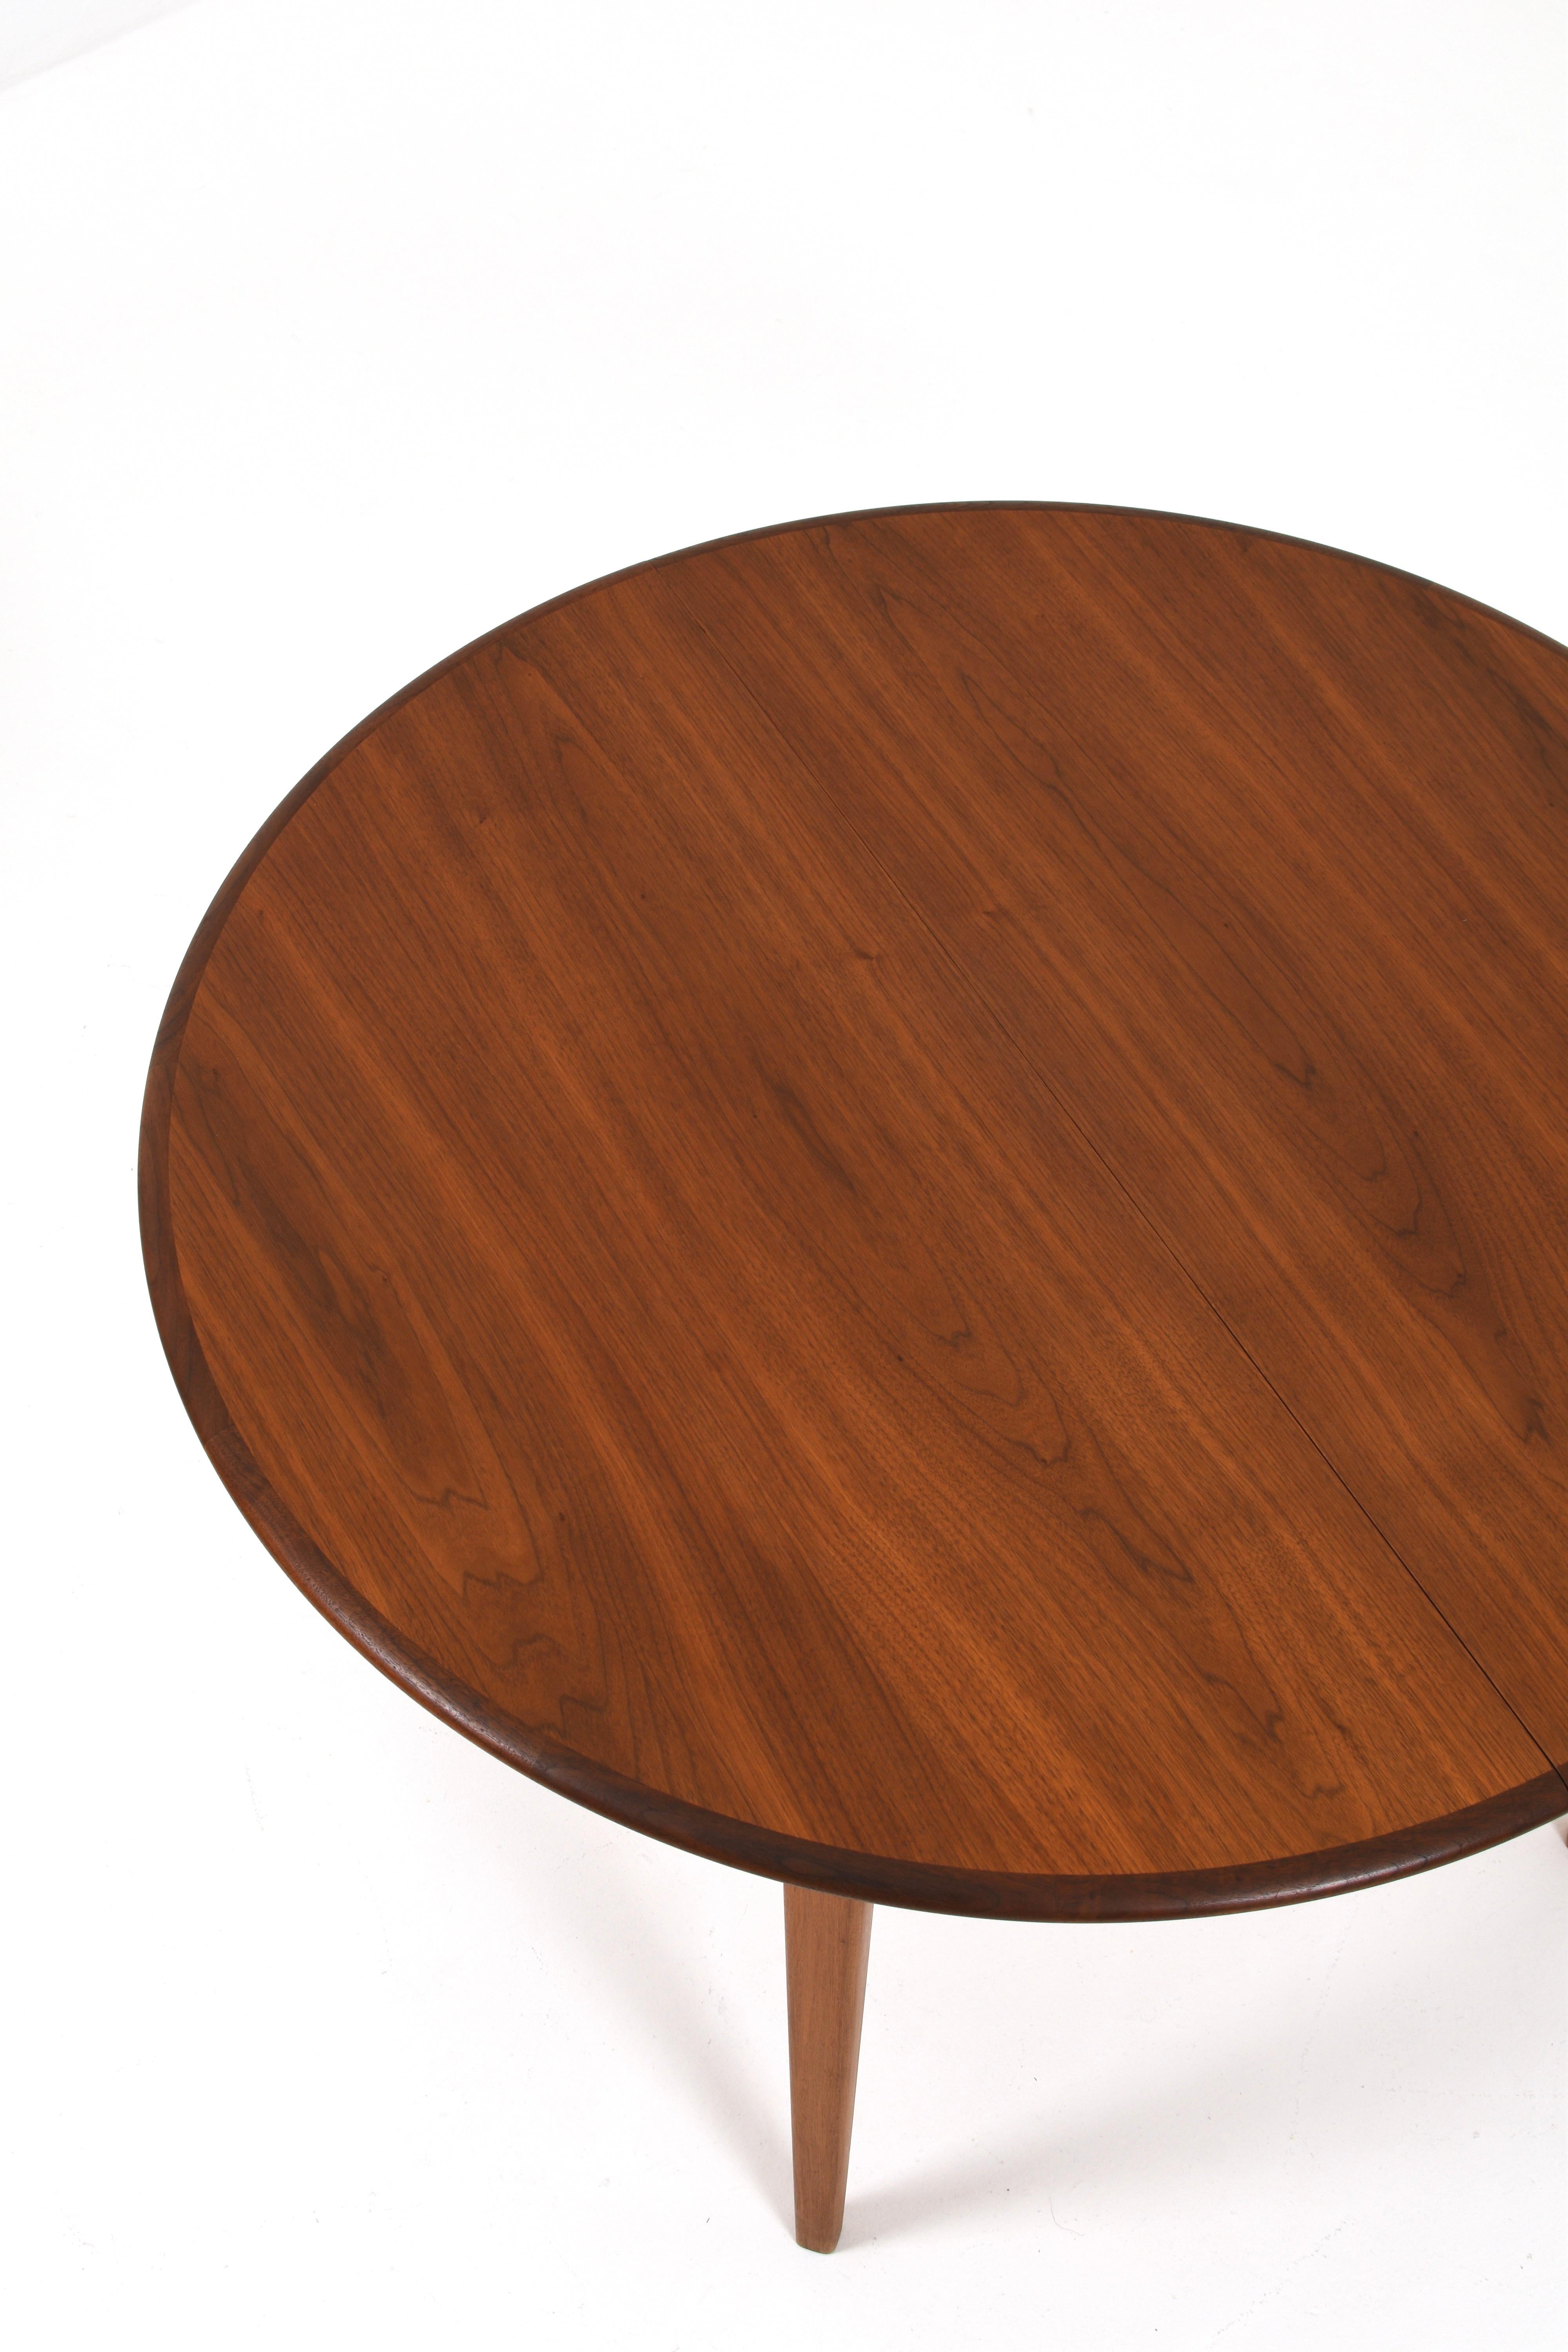 Eleganter Esstisch aus Teakholz mit schönen Details. Der Tisch ist 119 cm lang, aber mit zwei zusätzlichen Platten beträgt die Gesamtlänge 219 cm.